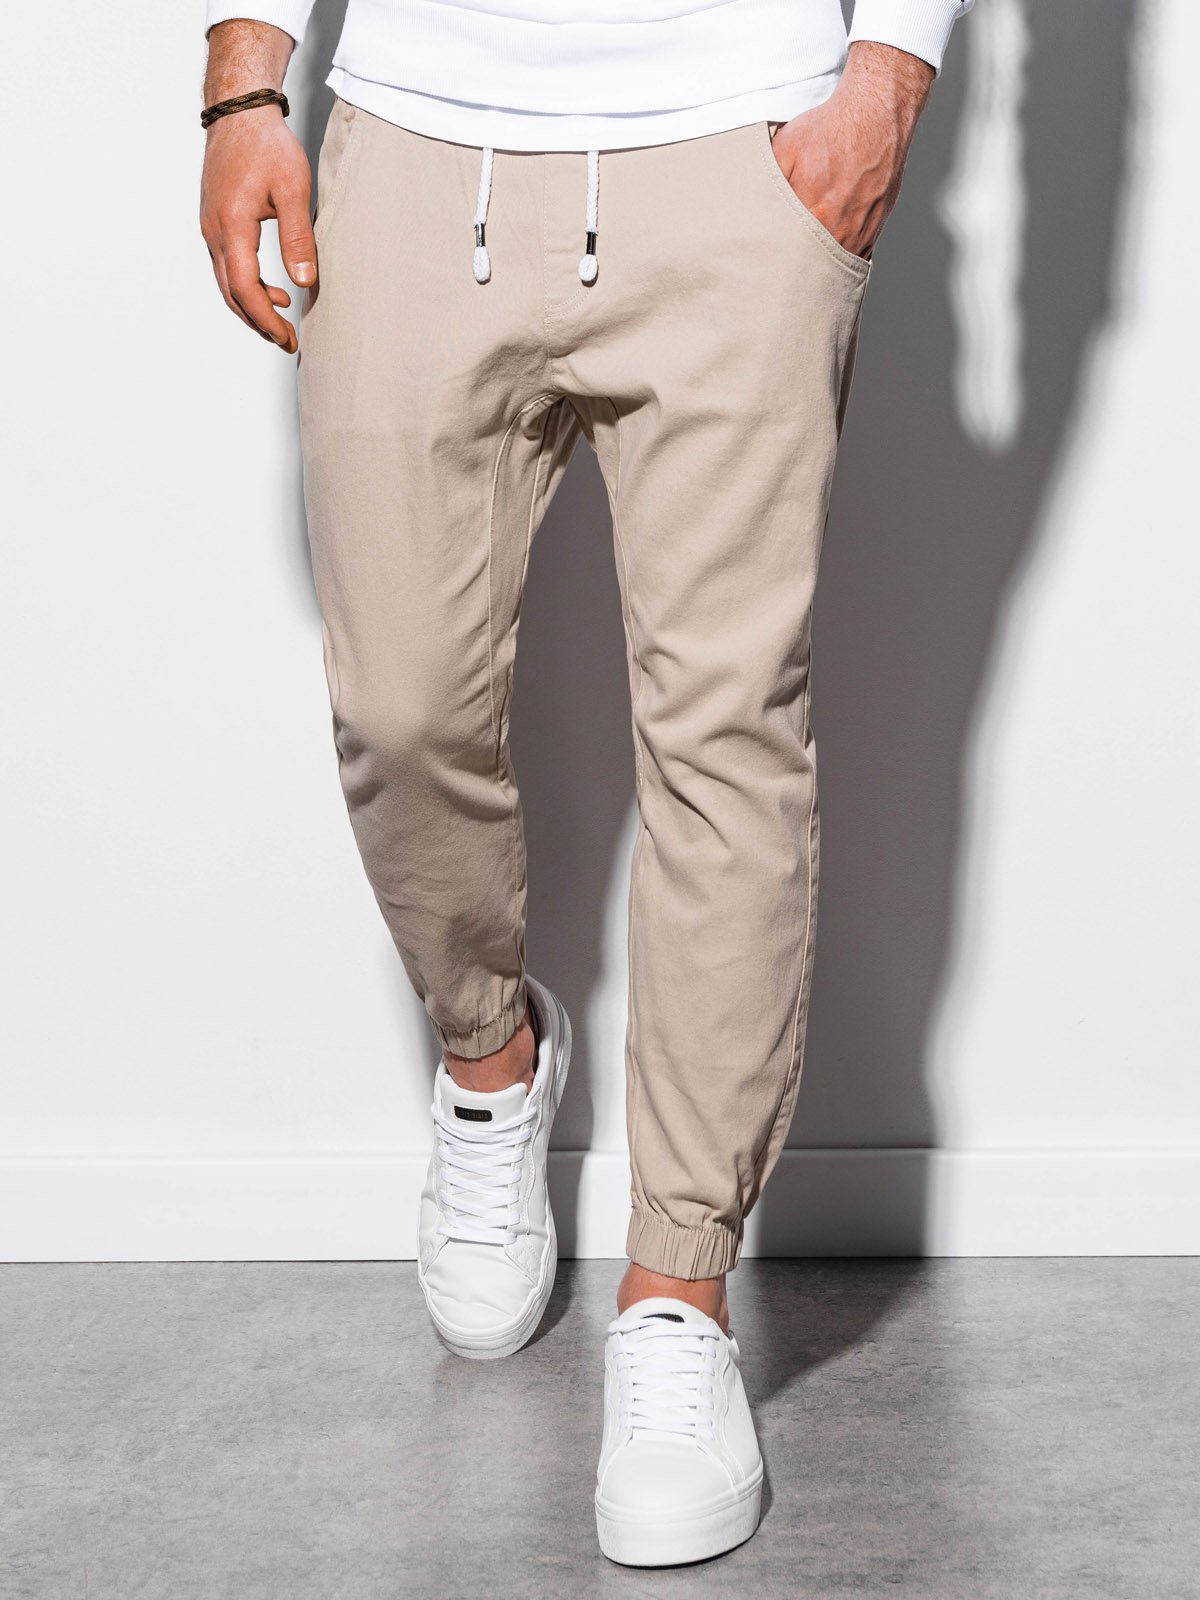 Men's pants joggers P885 - silver | MODONE wholesale - Clothing For Men